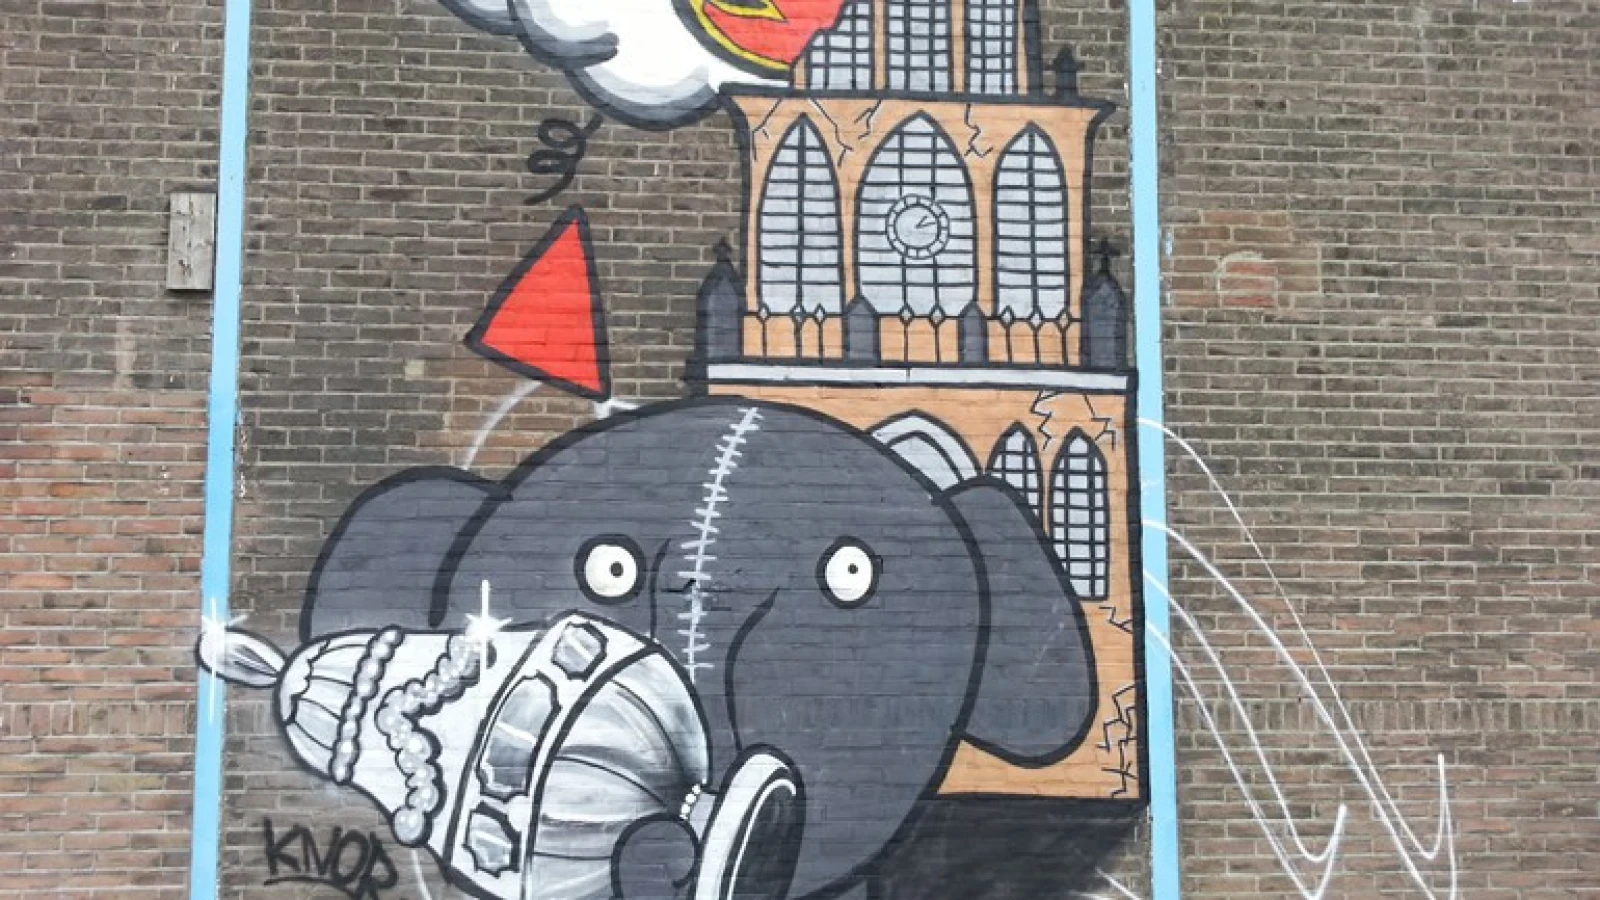 'Graffiti-oorlog' tussen Feyenoord en Utrechtsupporters in aanloop naar finale